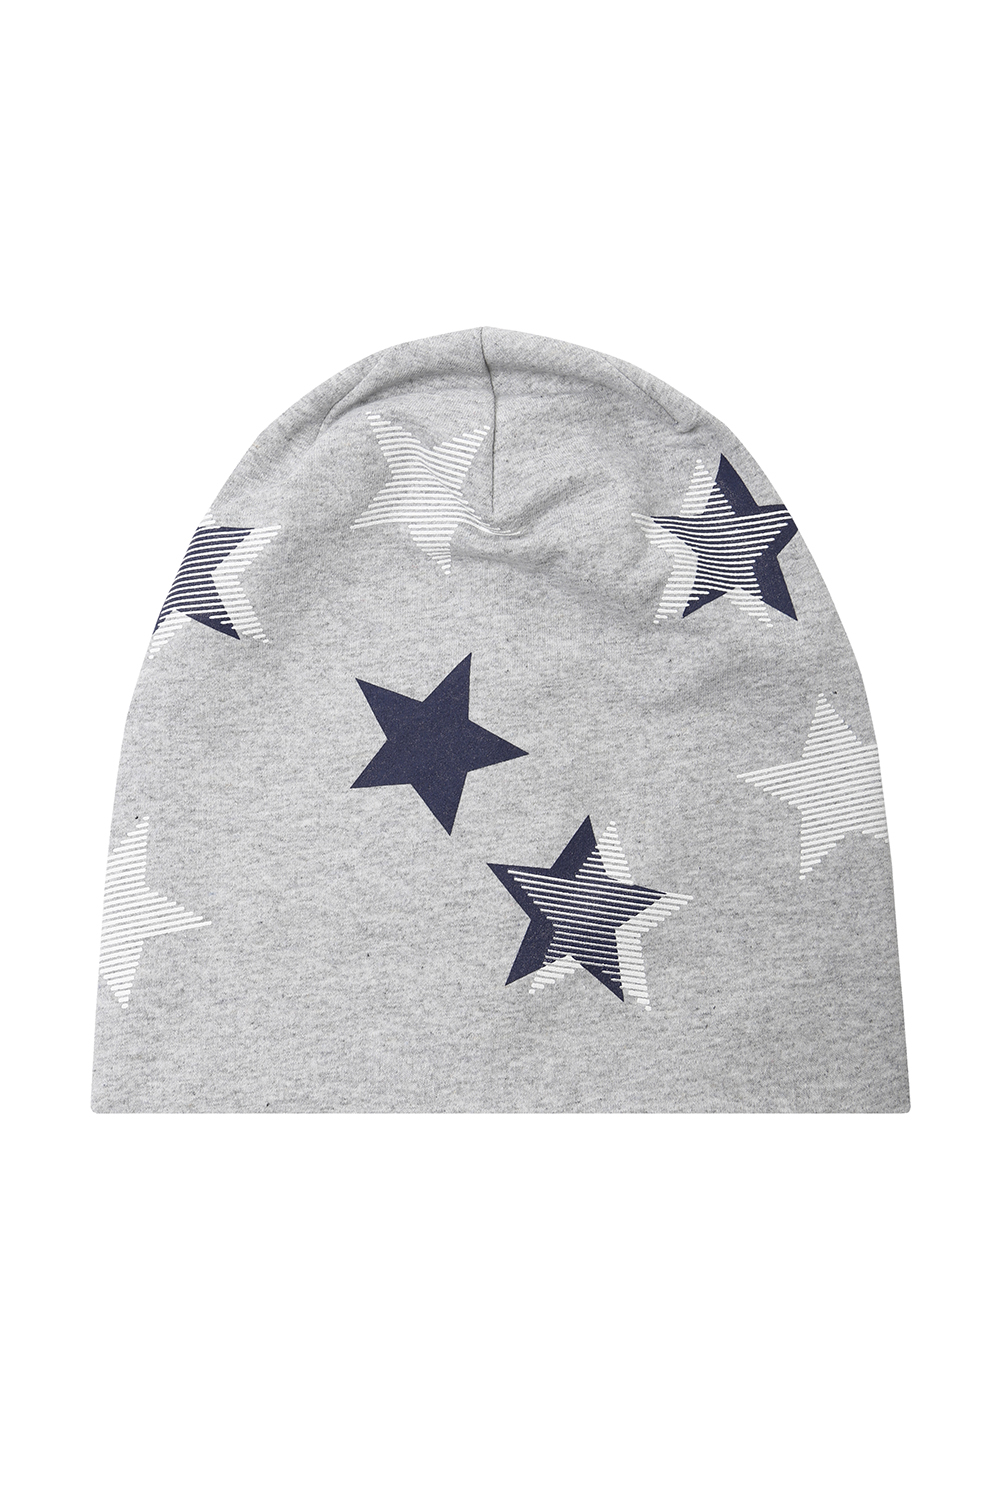 Трикотажная шапка с принтом «звёзды»